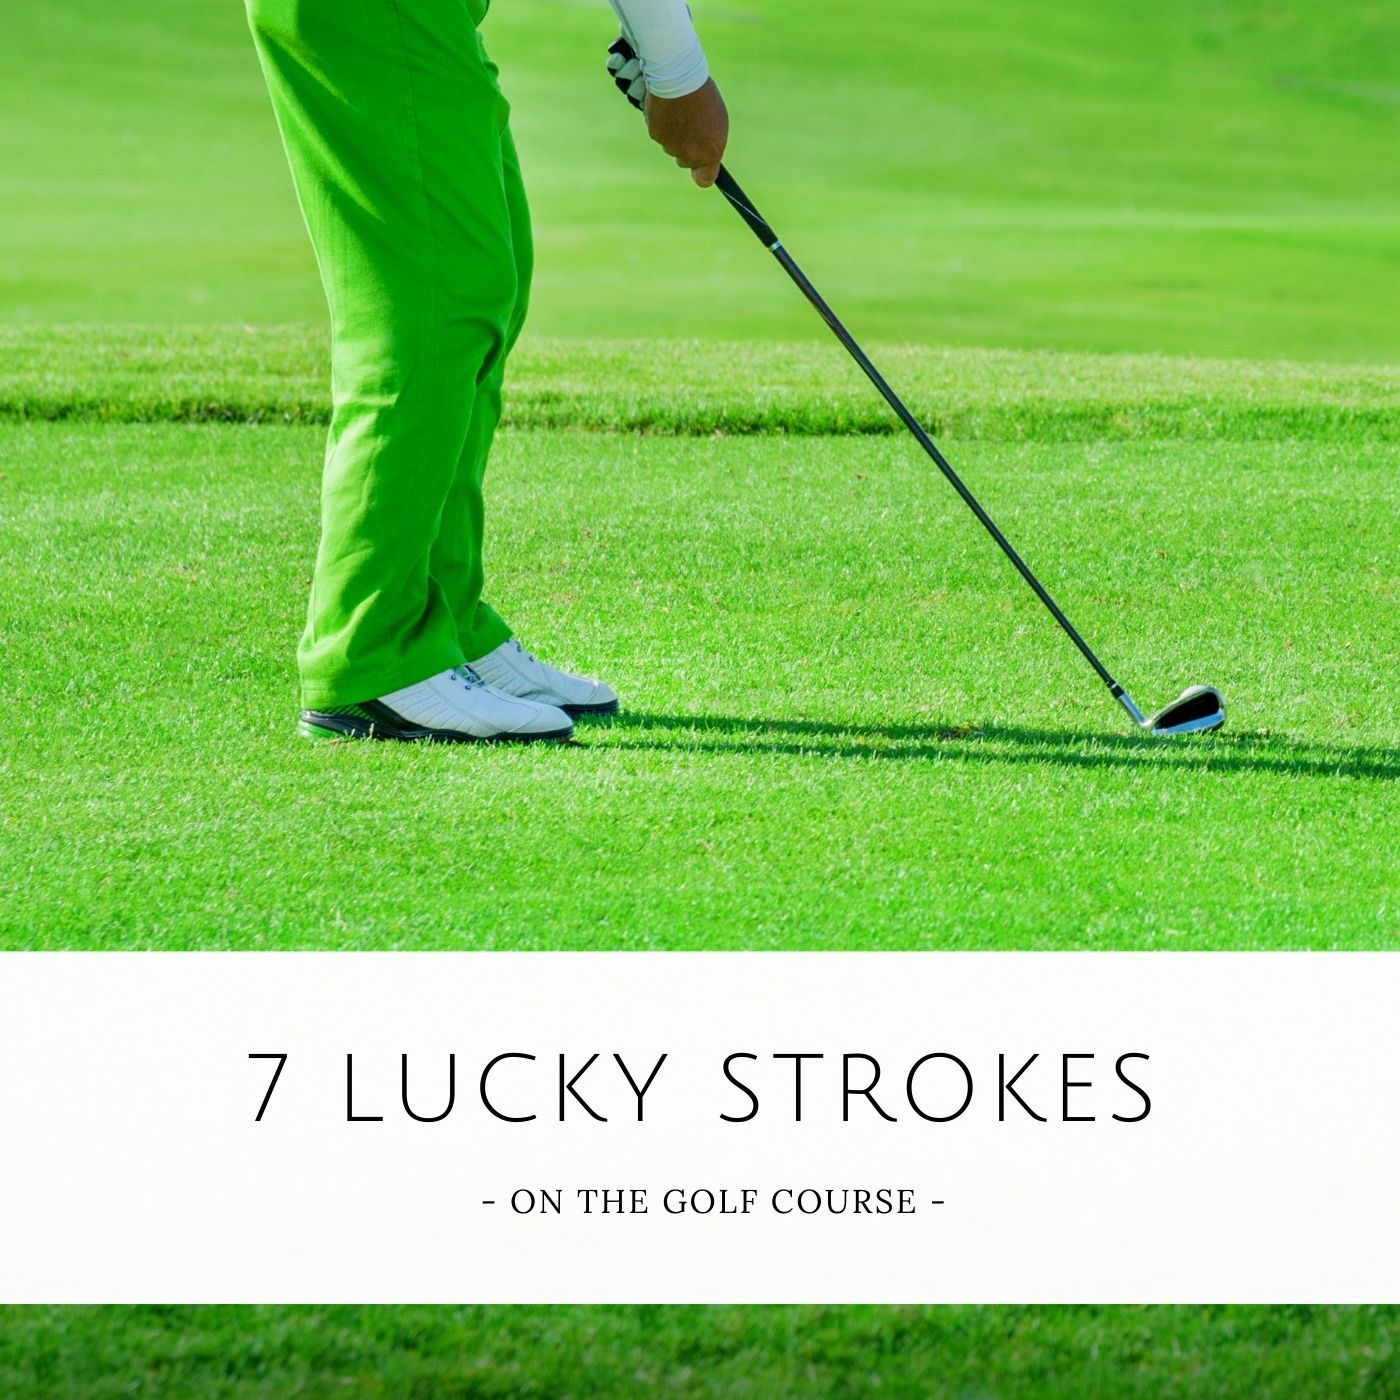 7 Lucky Strokes on the Golf Course